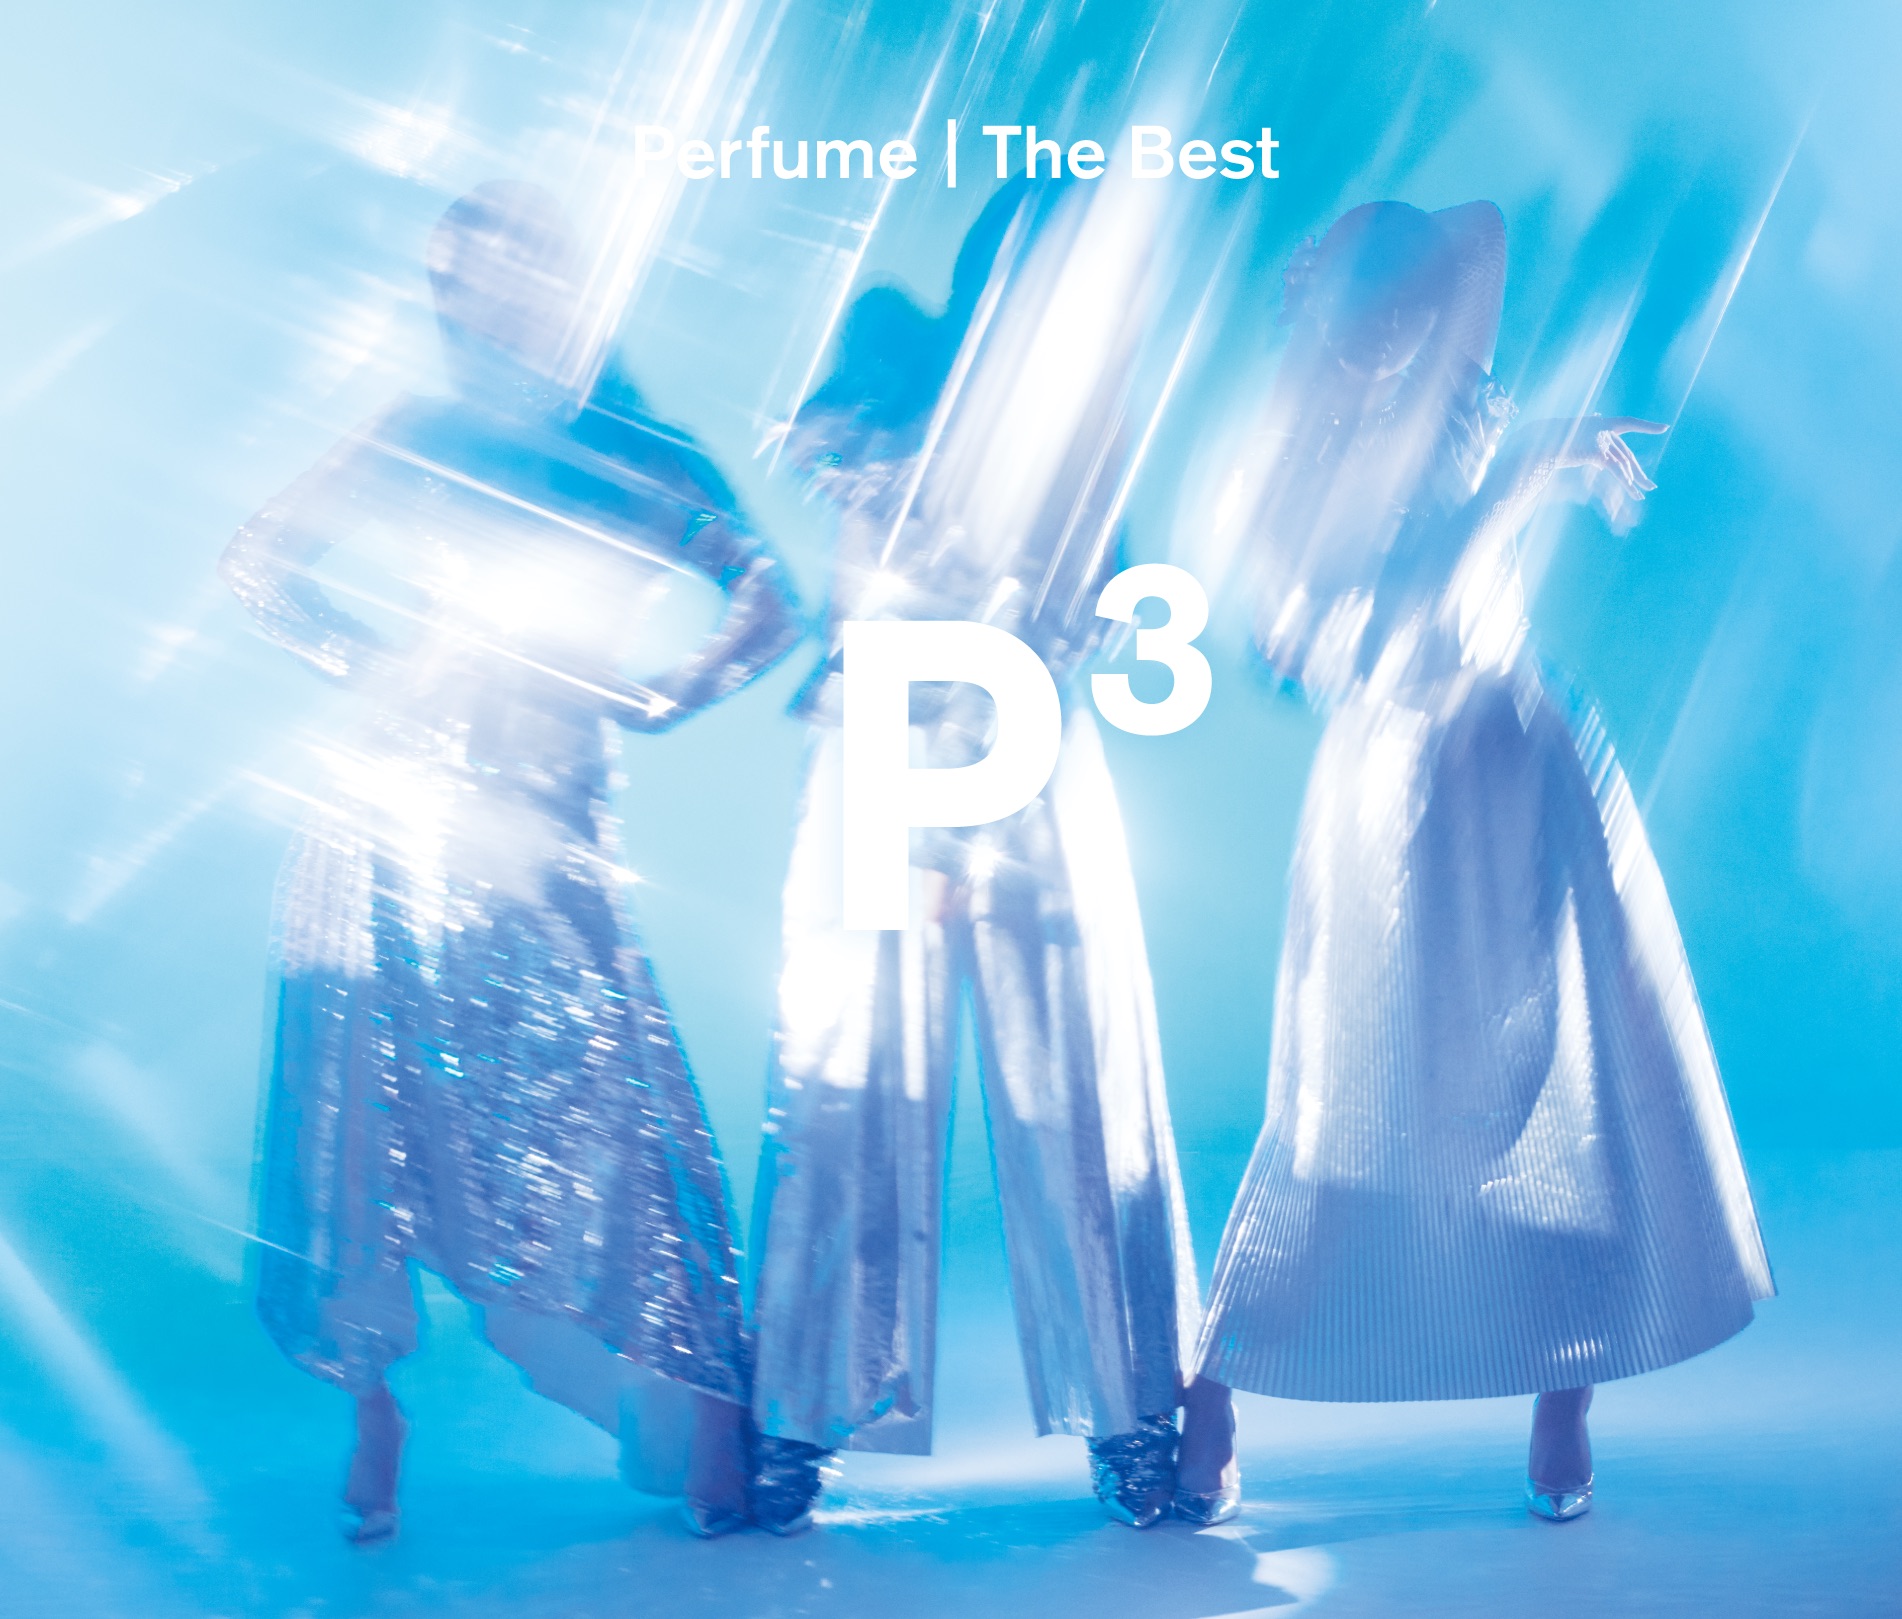 Perfume 初のベストアルバム Perfume The Best P Cubed 発売 ユニバーサル ミュージック合同会社のプレスリリース